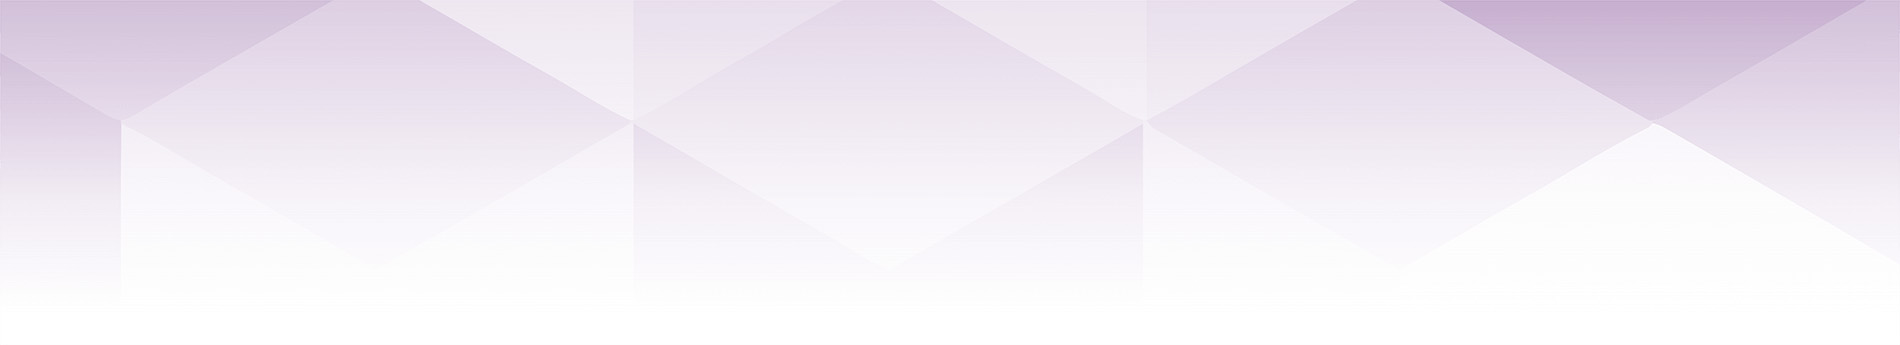 紫色の六角形のパターン